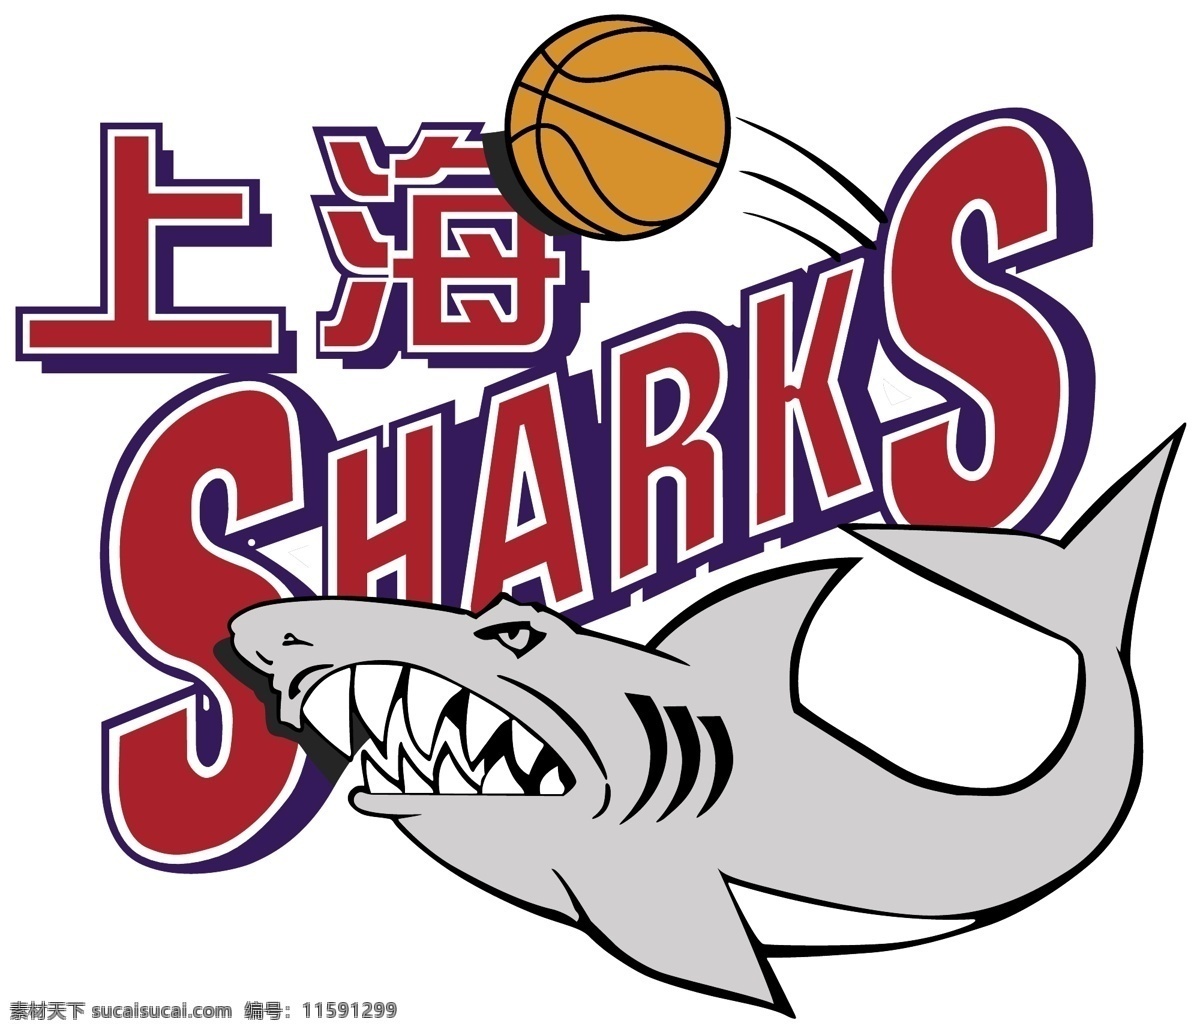 logo 标识标志图标 标志 篮球 品牌 企业 上海 东 方大 鲨鱼 男子 篮球队 矢量 模板下载 大鲨鱼 上海东方篮球 psd源文件